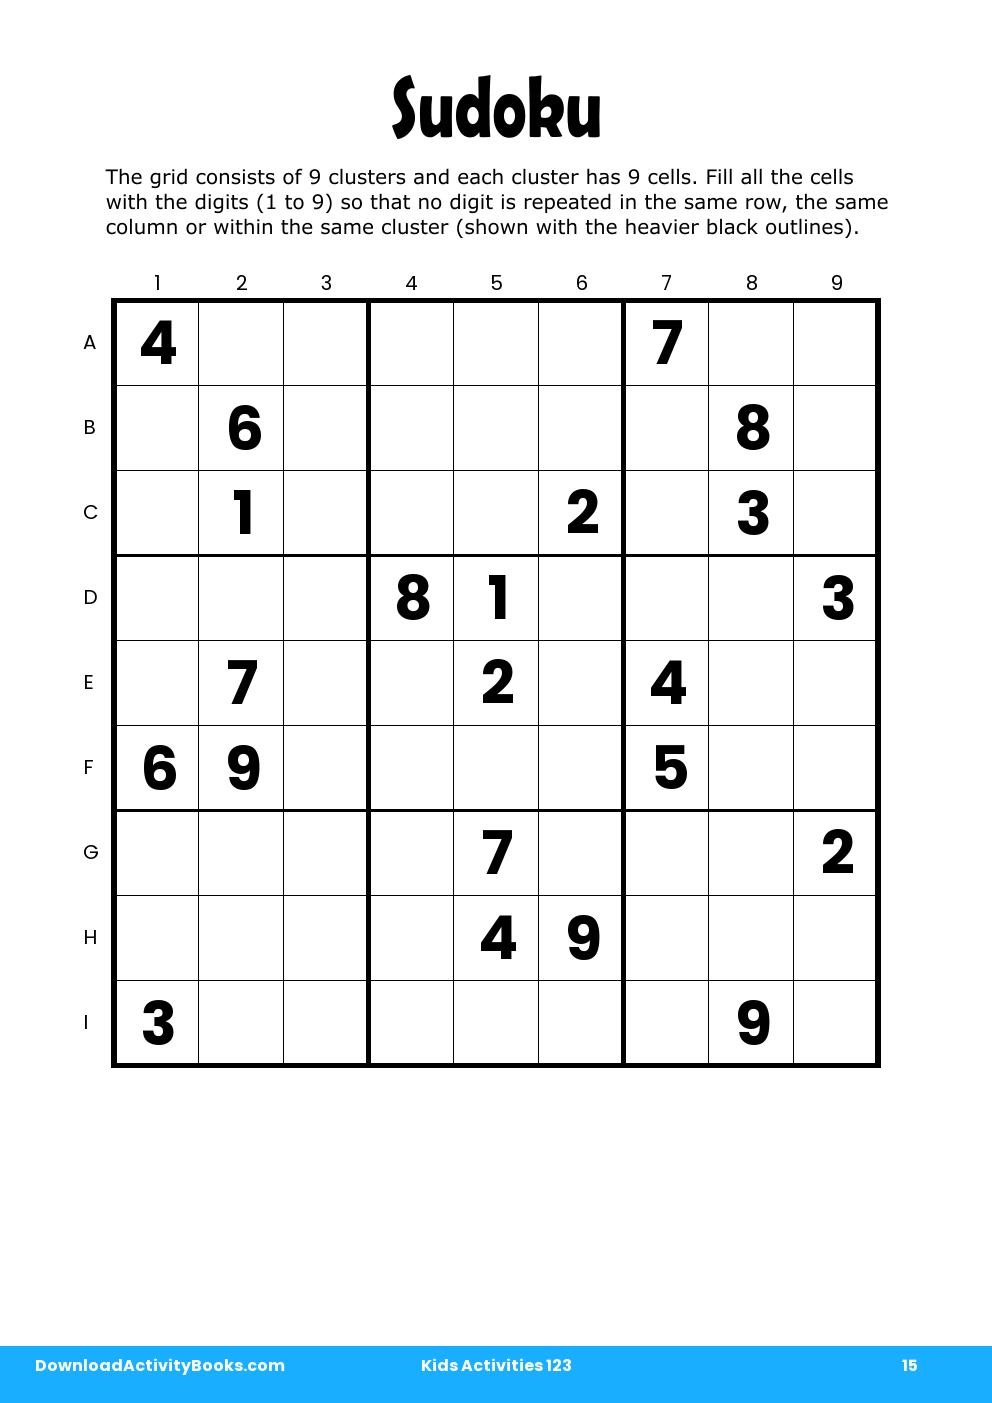 Sudoku in Kids Activities 123